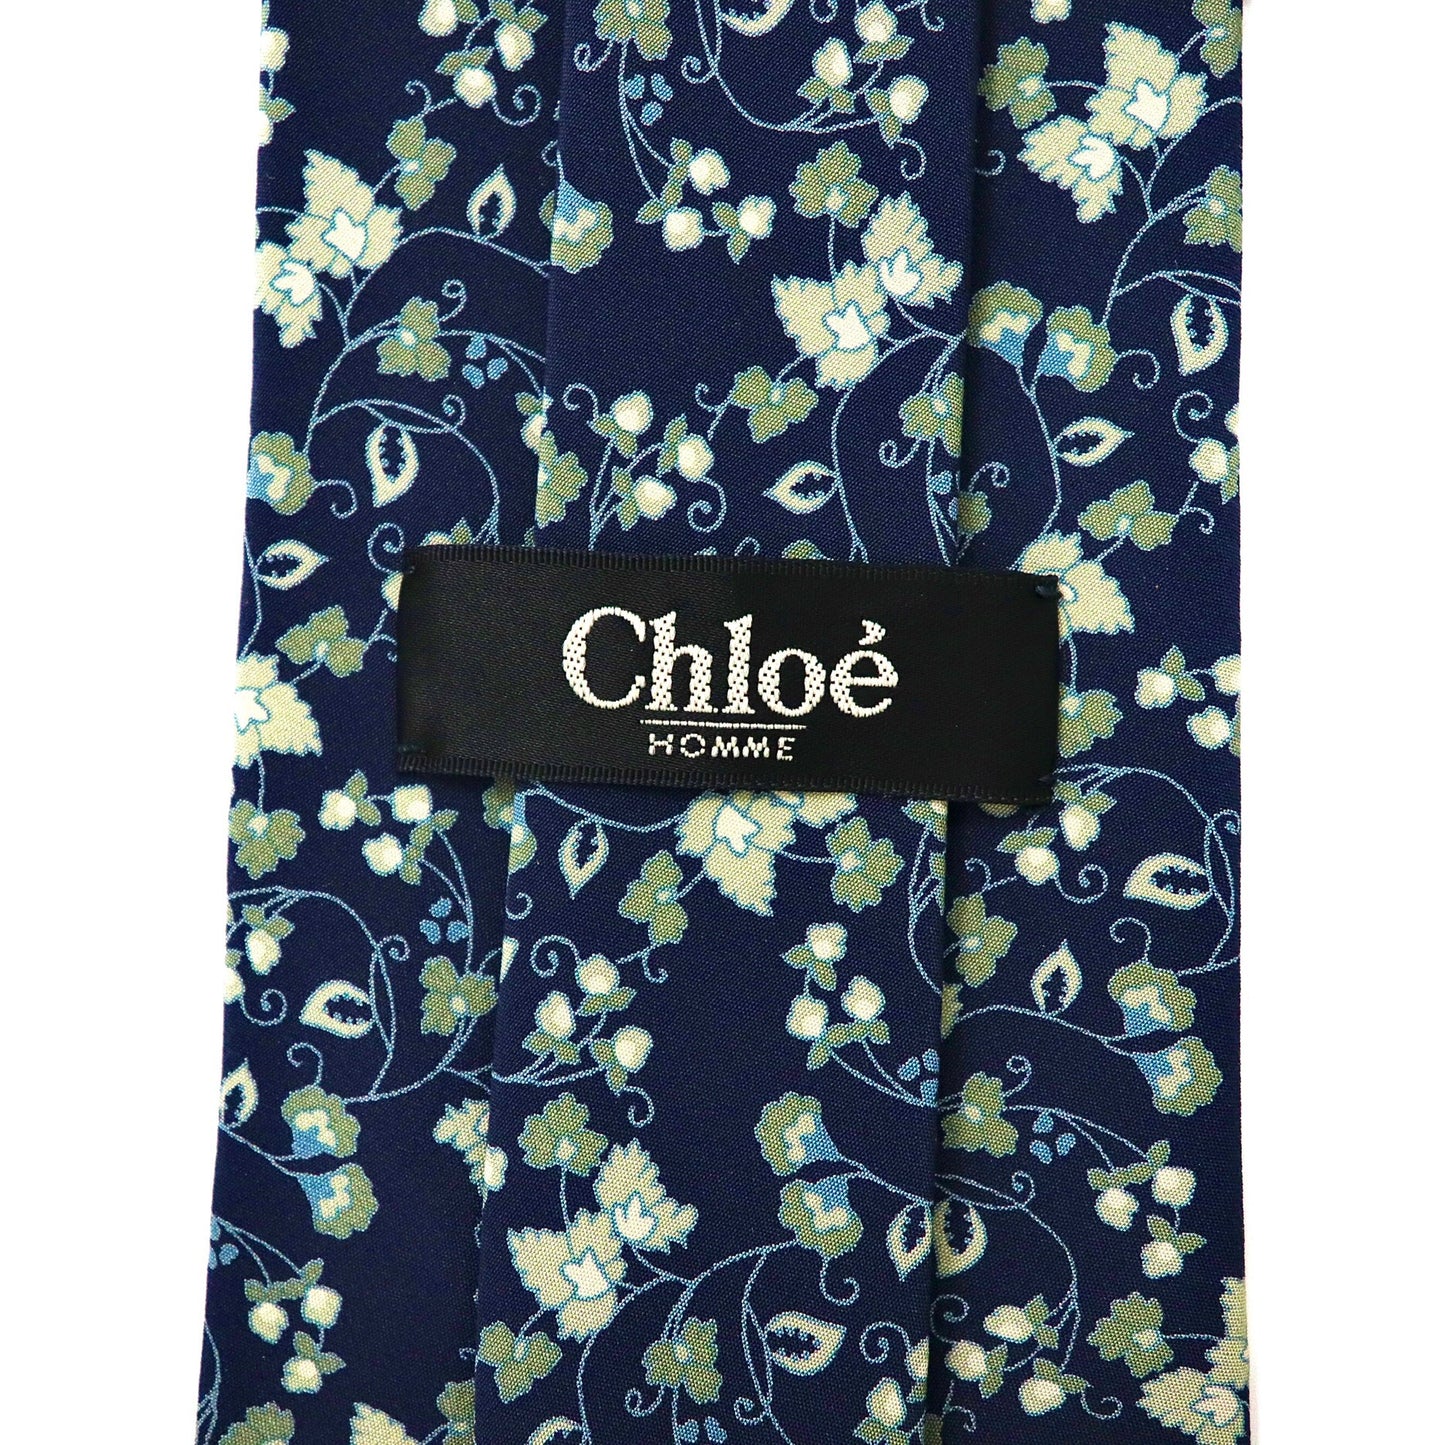 Chloe HOMME ネクタイ ネイビー シルク 花柄 日本製